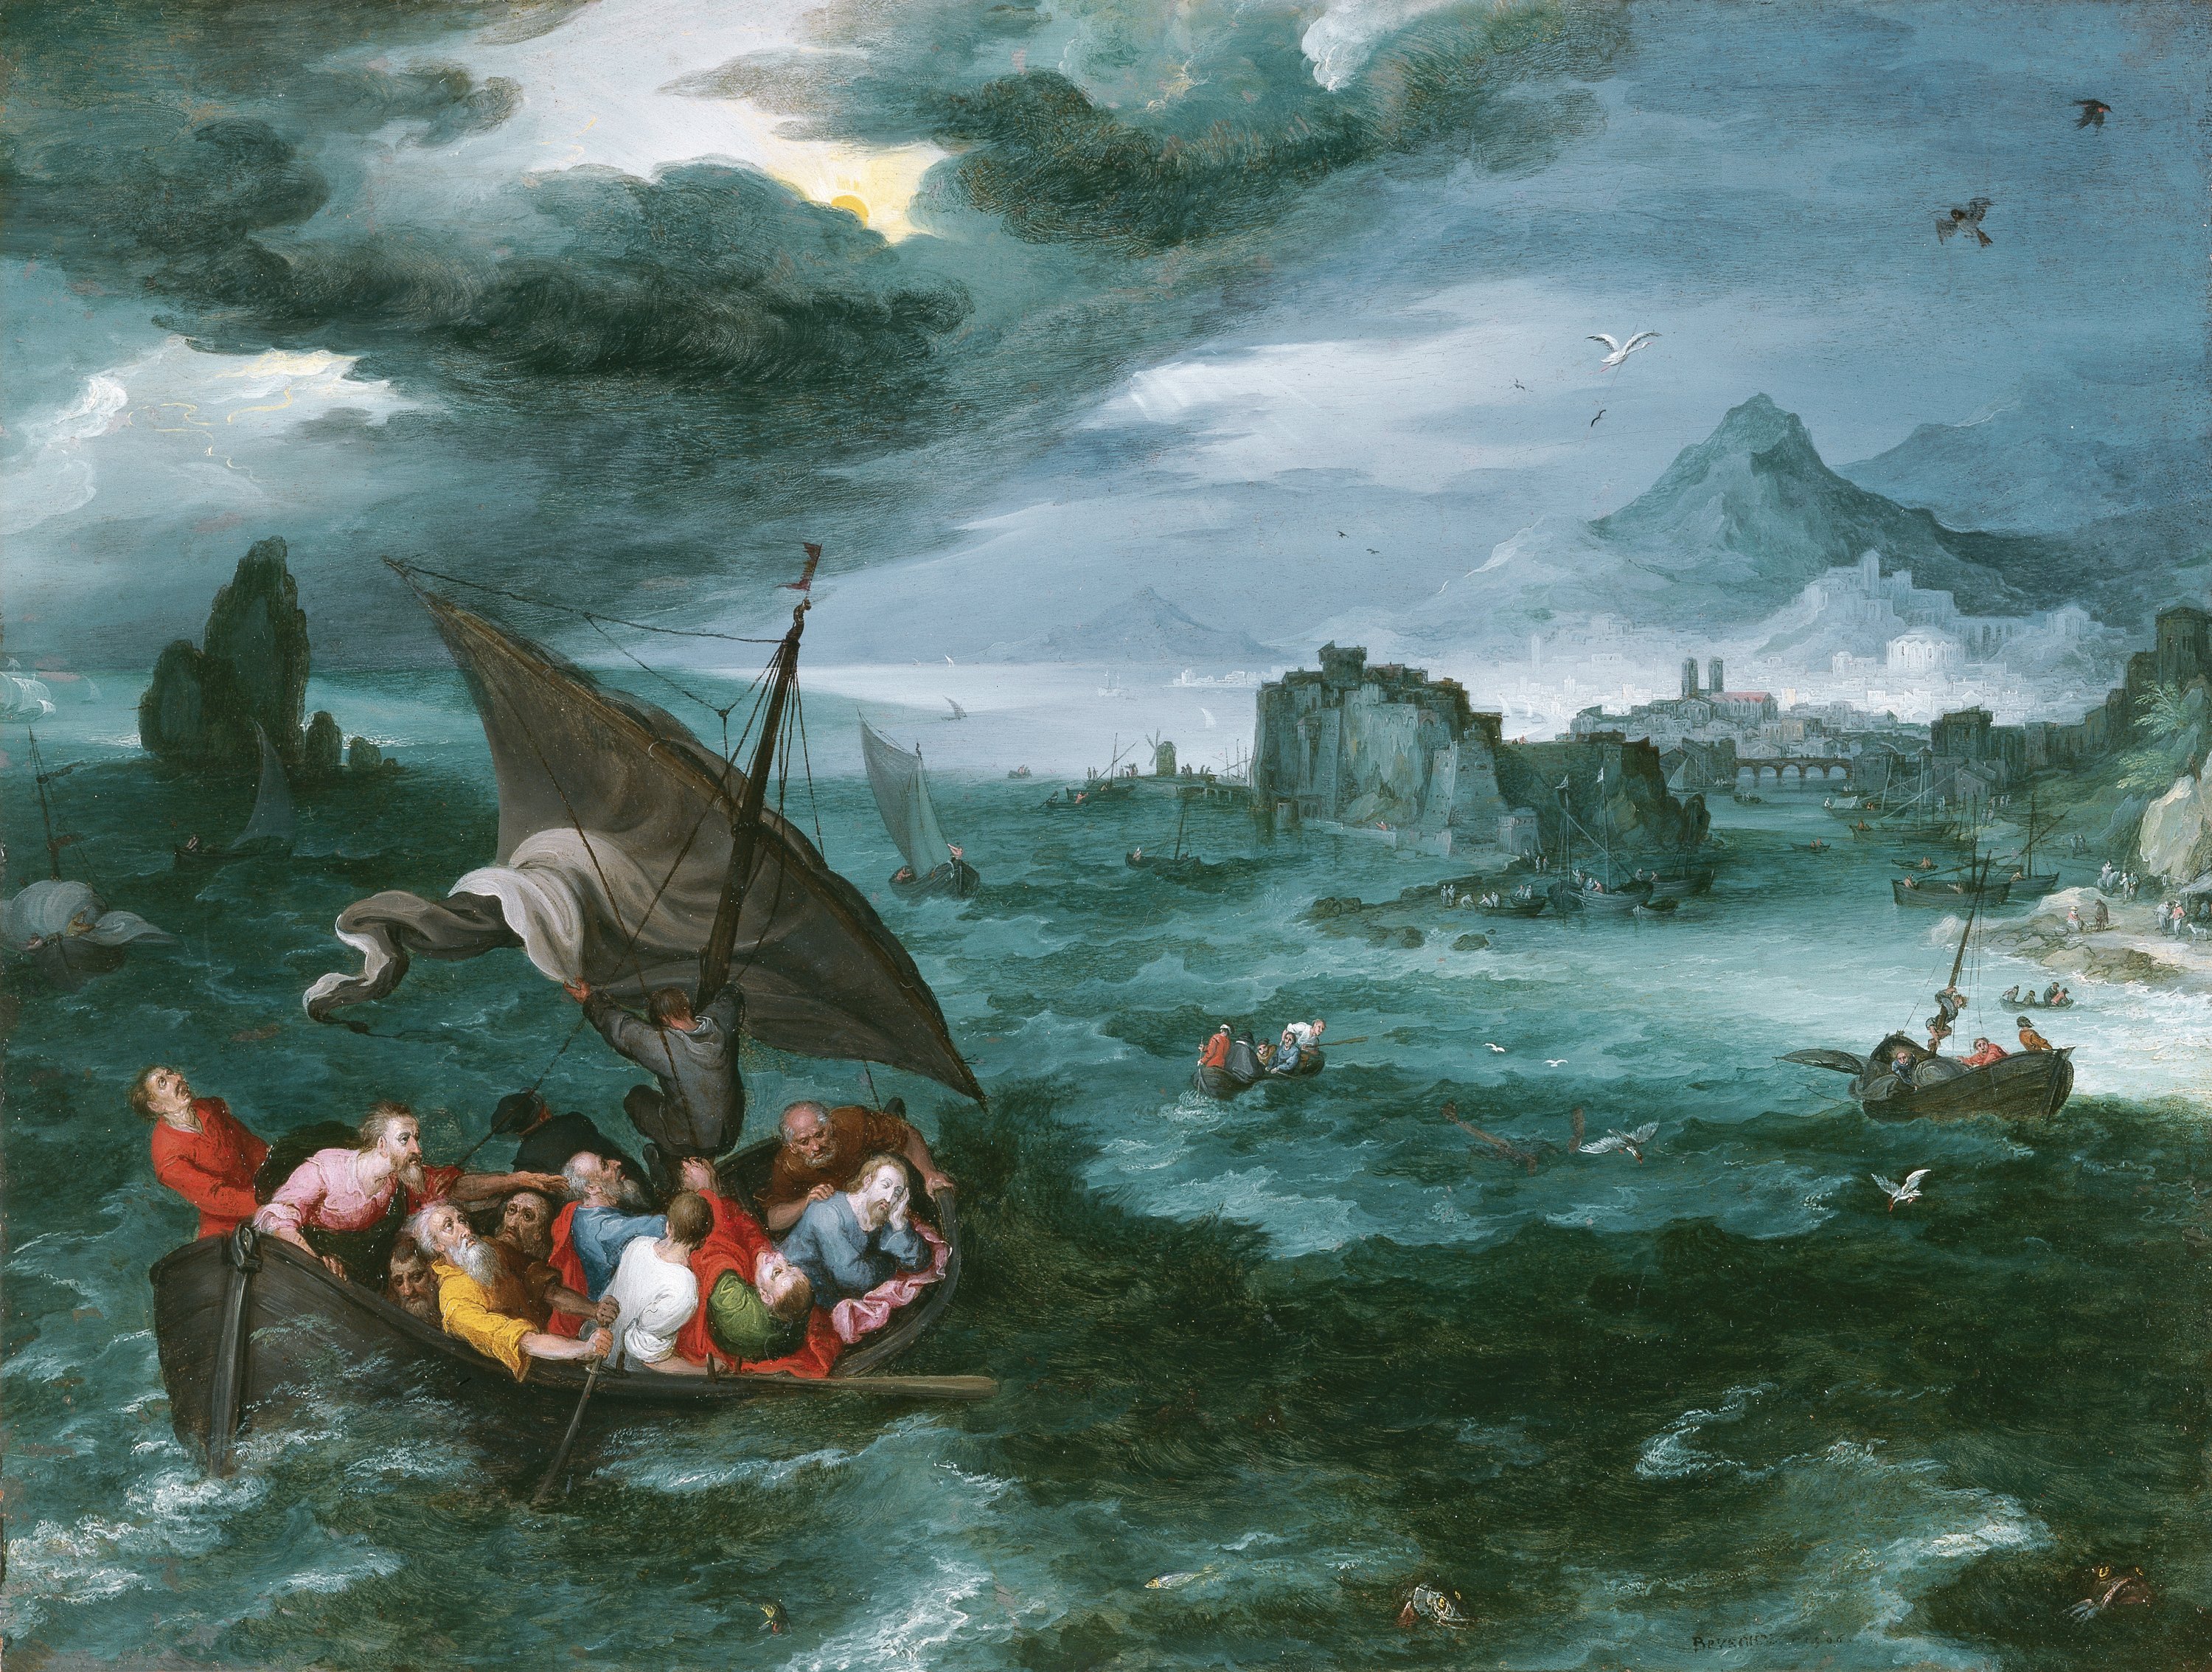 Christ in the Storm on the Sea of Galilee. Cristo en la tempestad del mar de Galilea, 1596